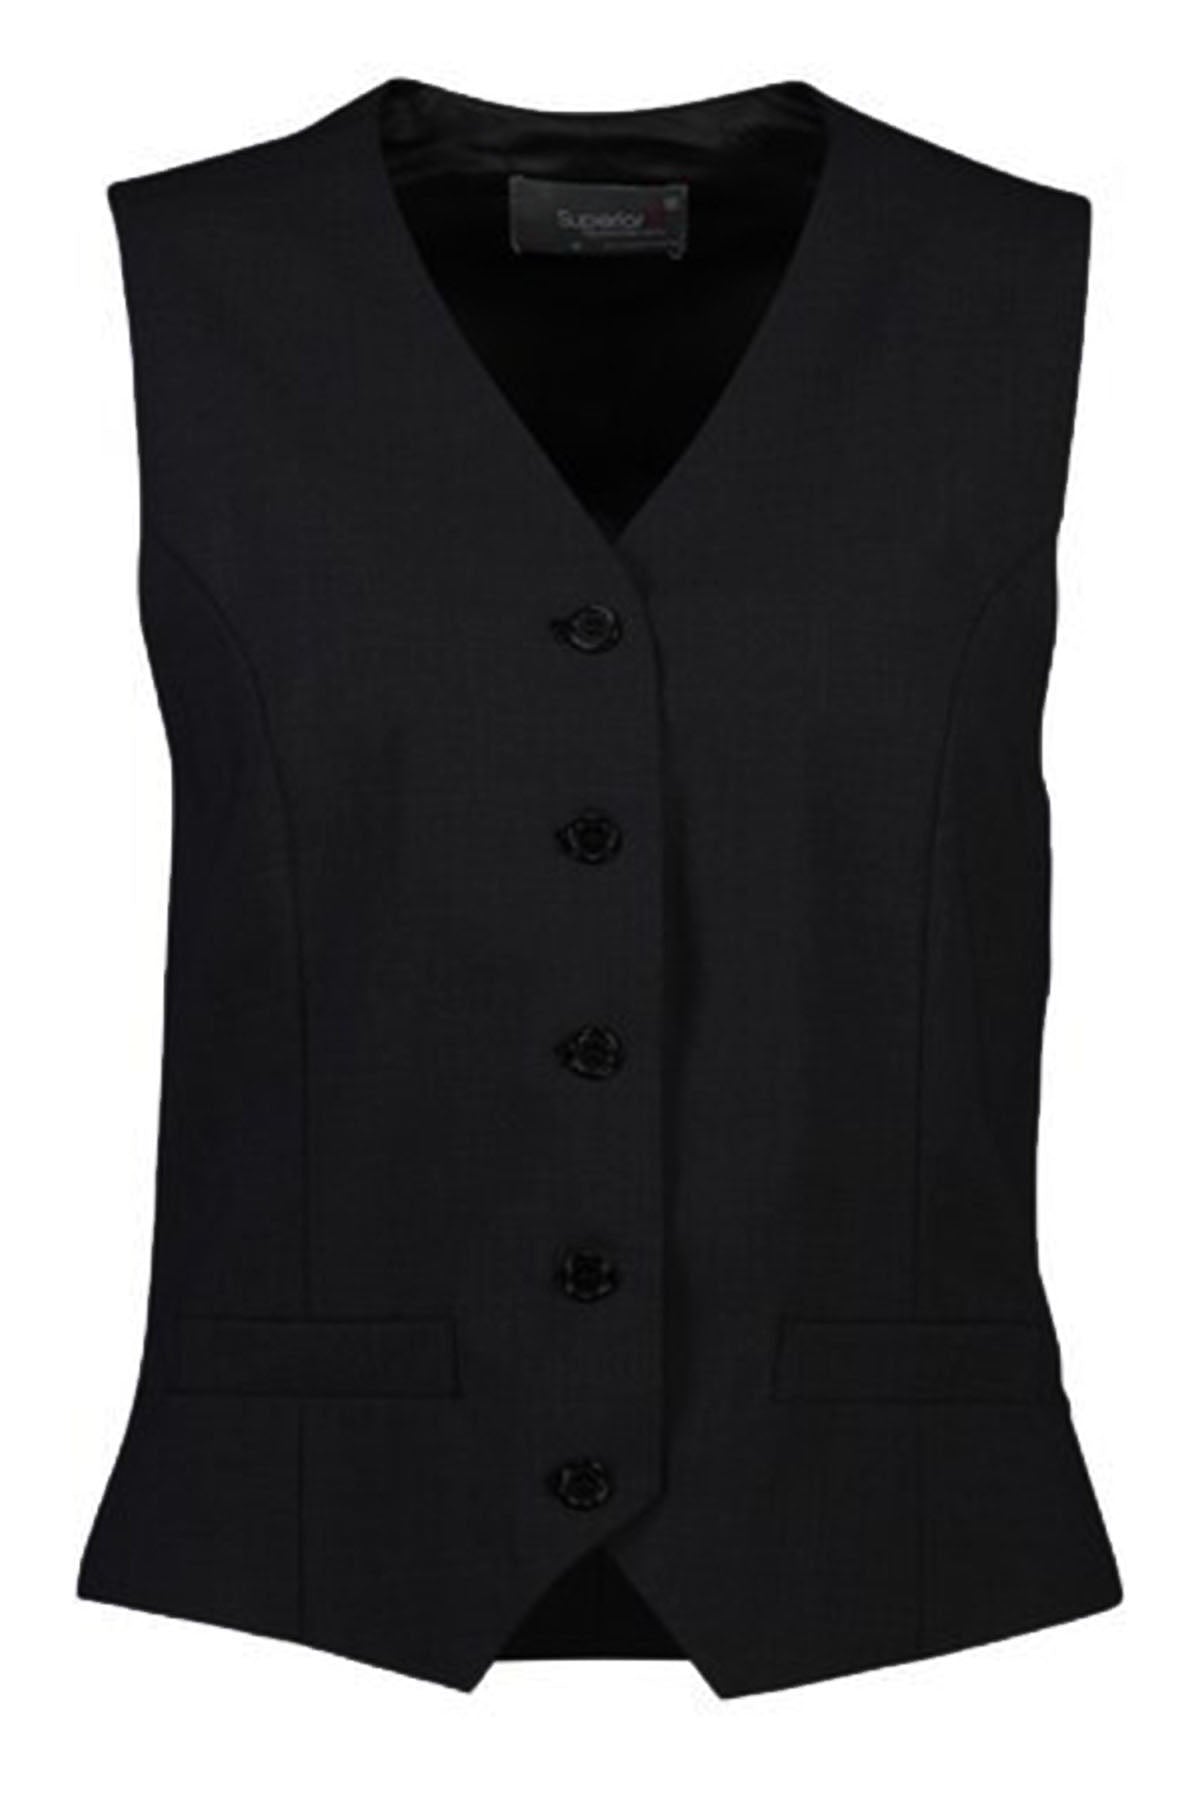 Women's 5 Button Vest